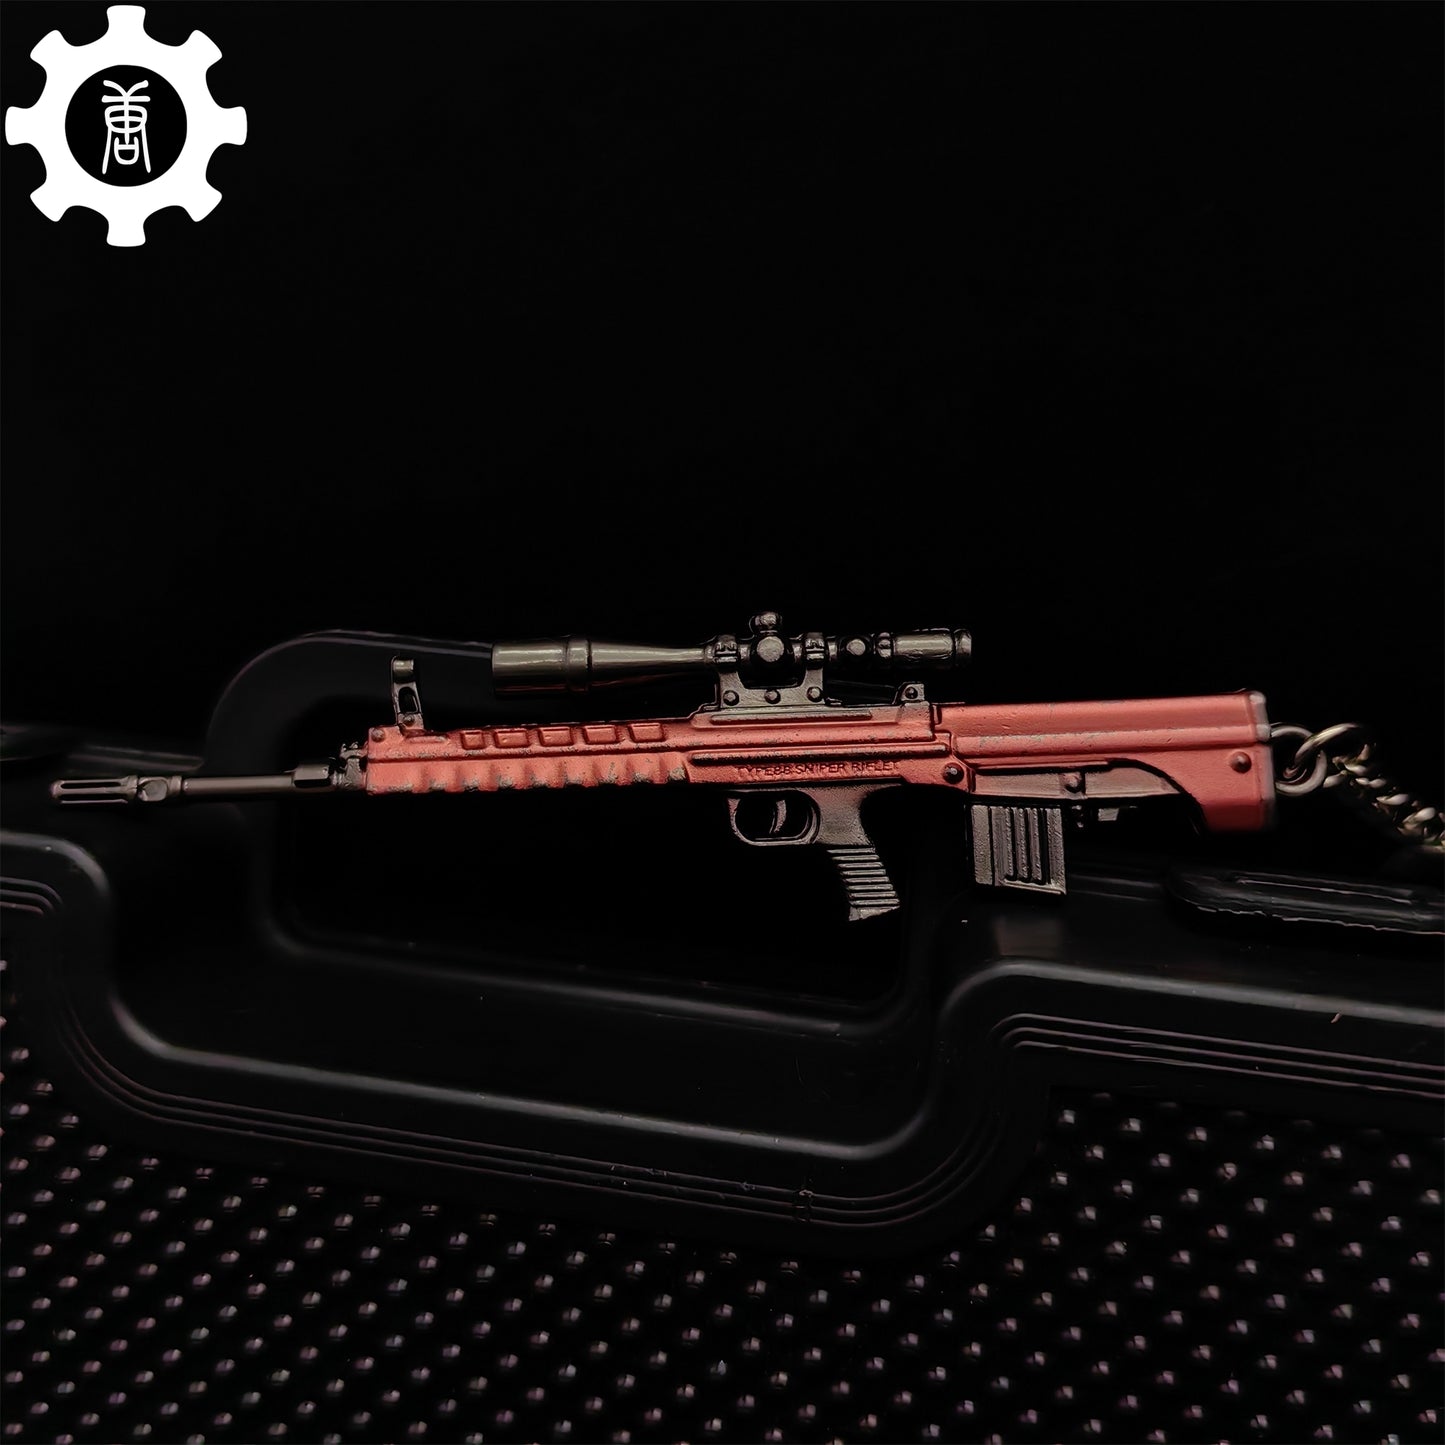 Mini QBU-88 Sniper Rifle Metal Keychain